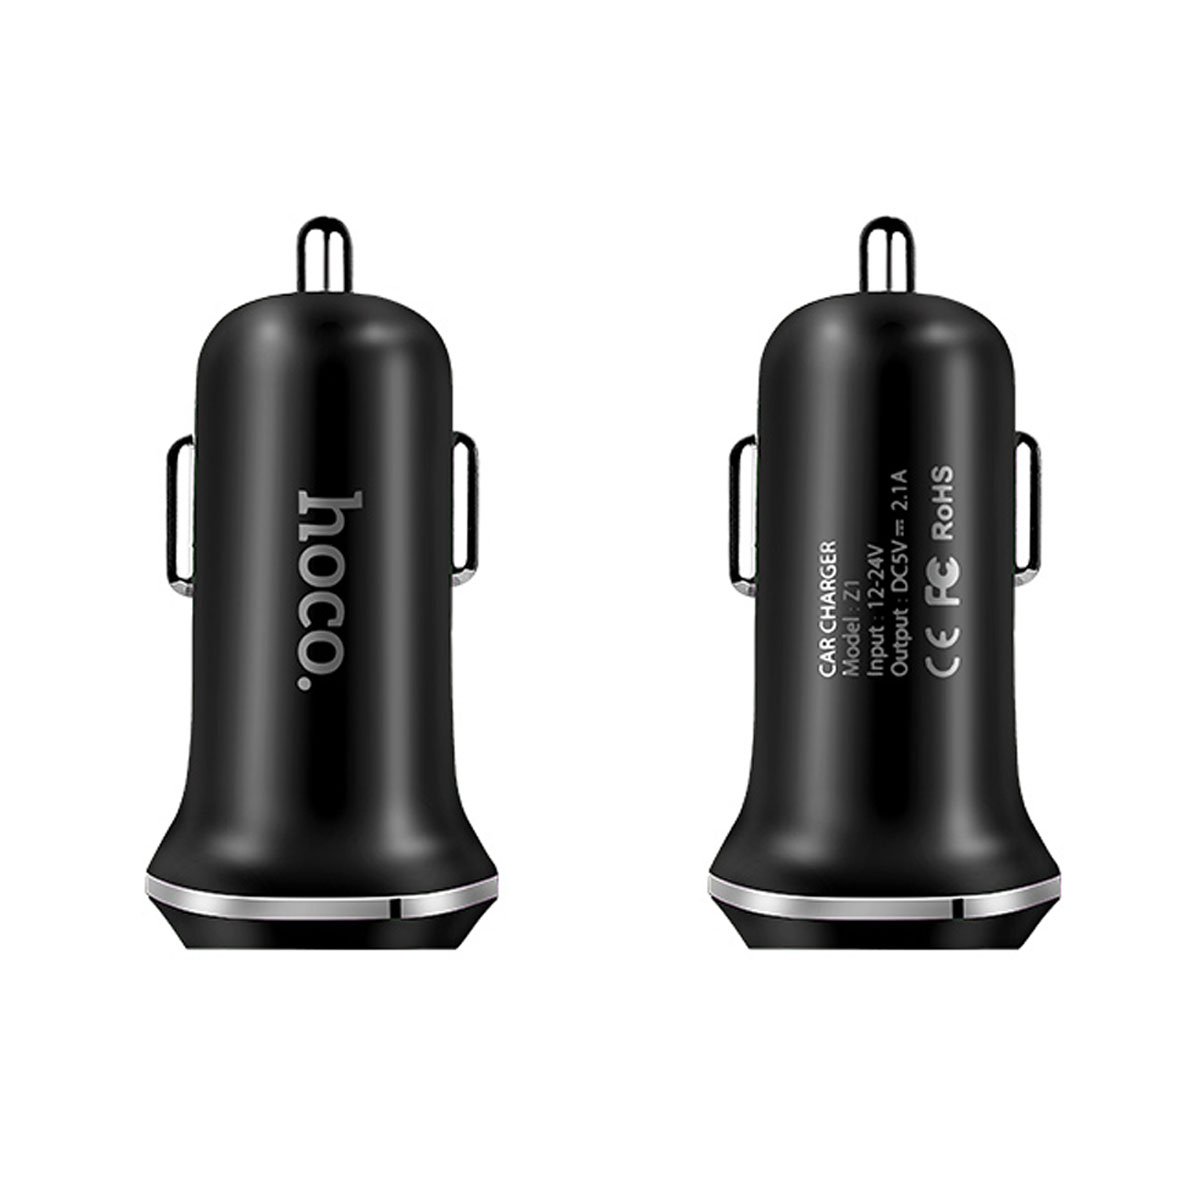 АЗУ (Автомобильное зарядное устройство) HOCO Z1, 2.1A, 2 USB, черный